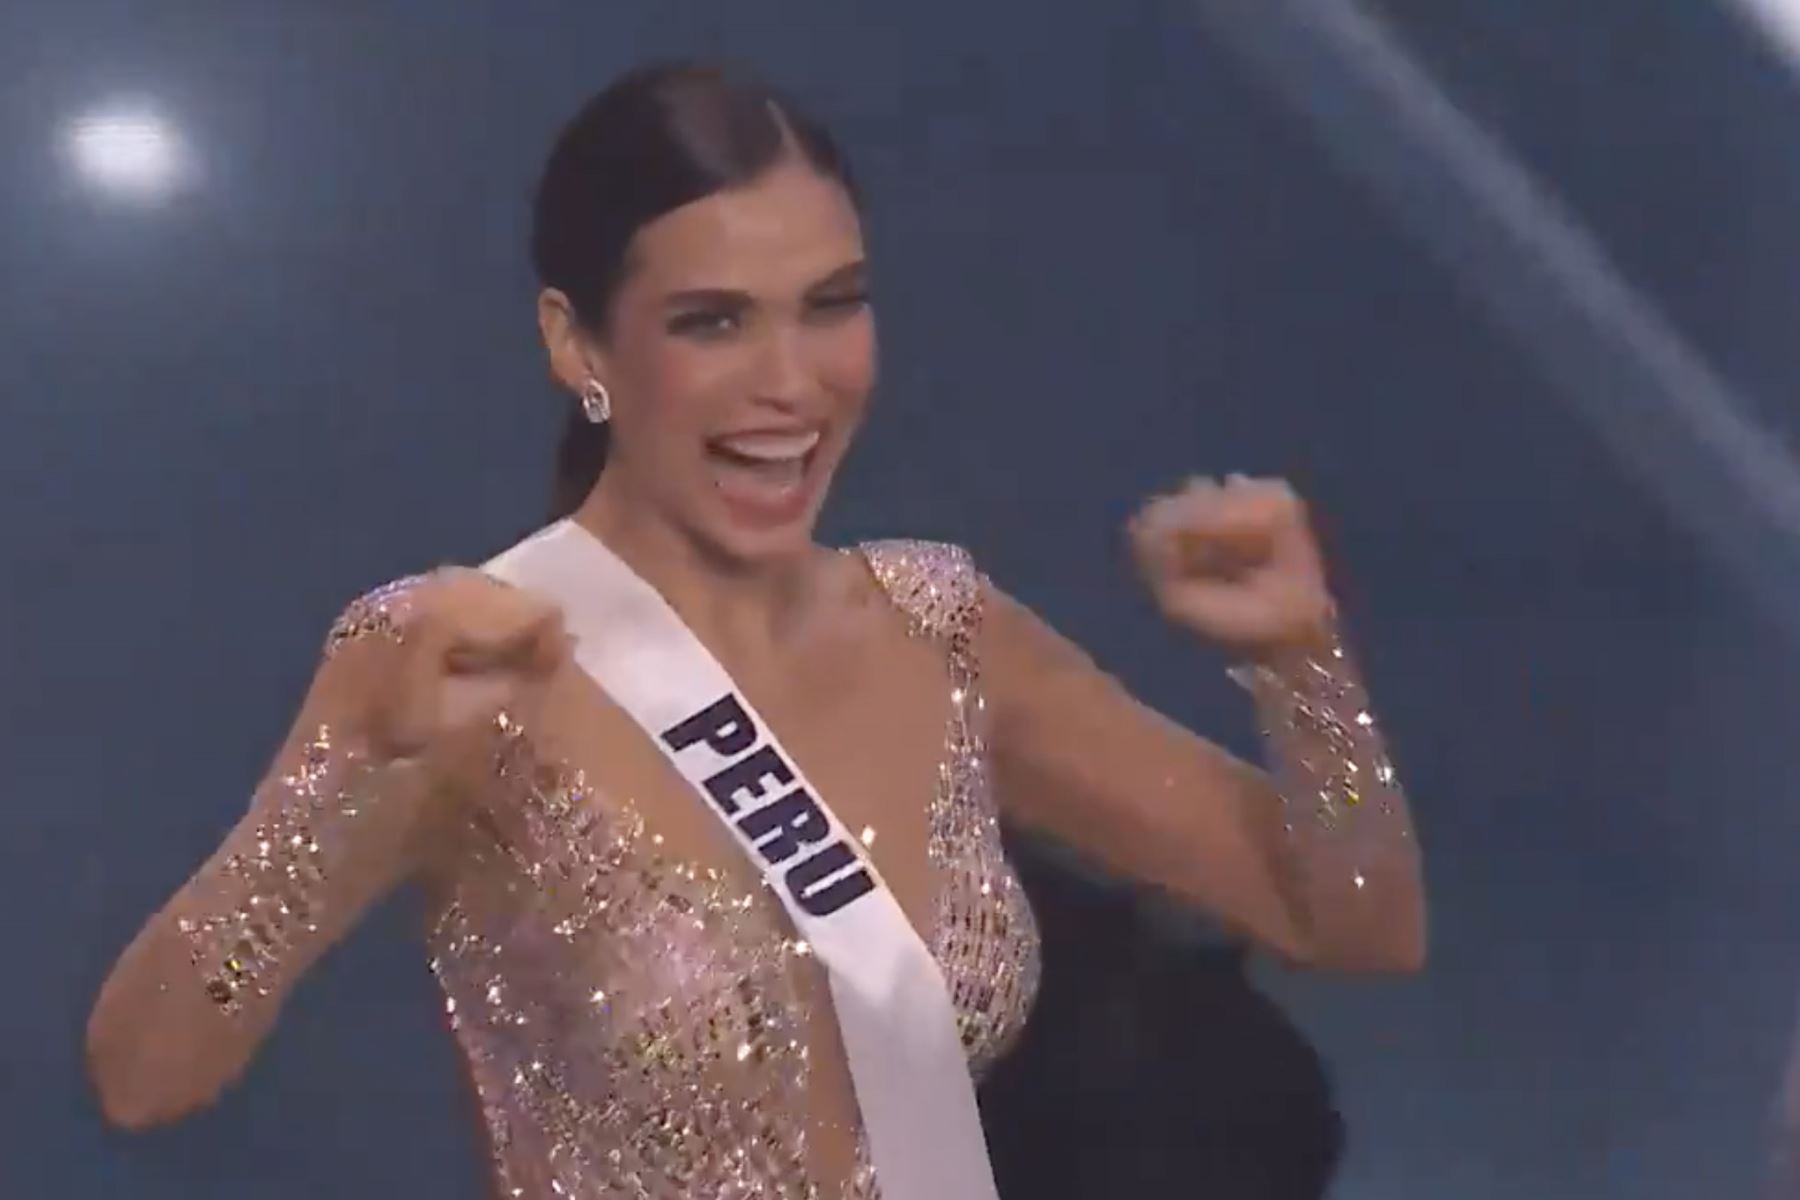 Emoción de Miss Perú Janick Maceta al ser seleccionada como una de las 5 finalistas en el Miss Universo. ANDINA/Difusión